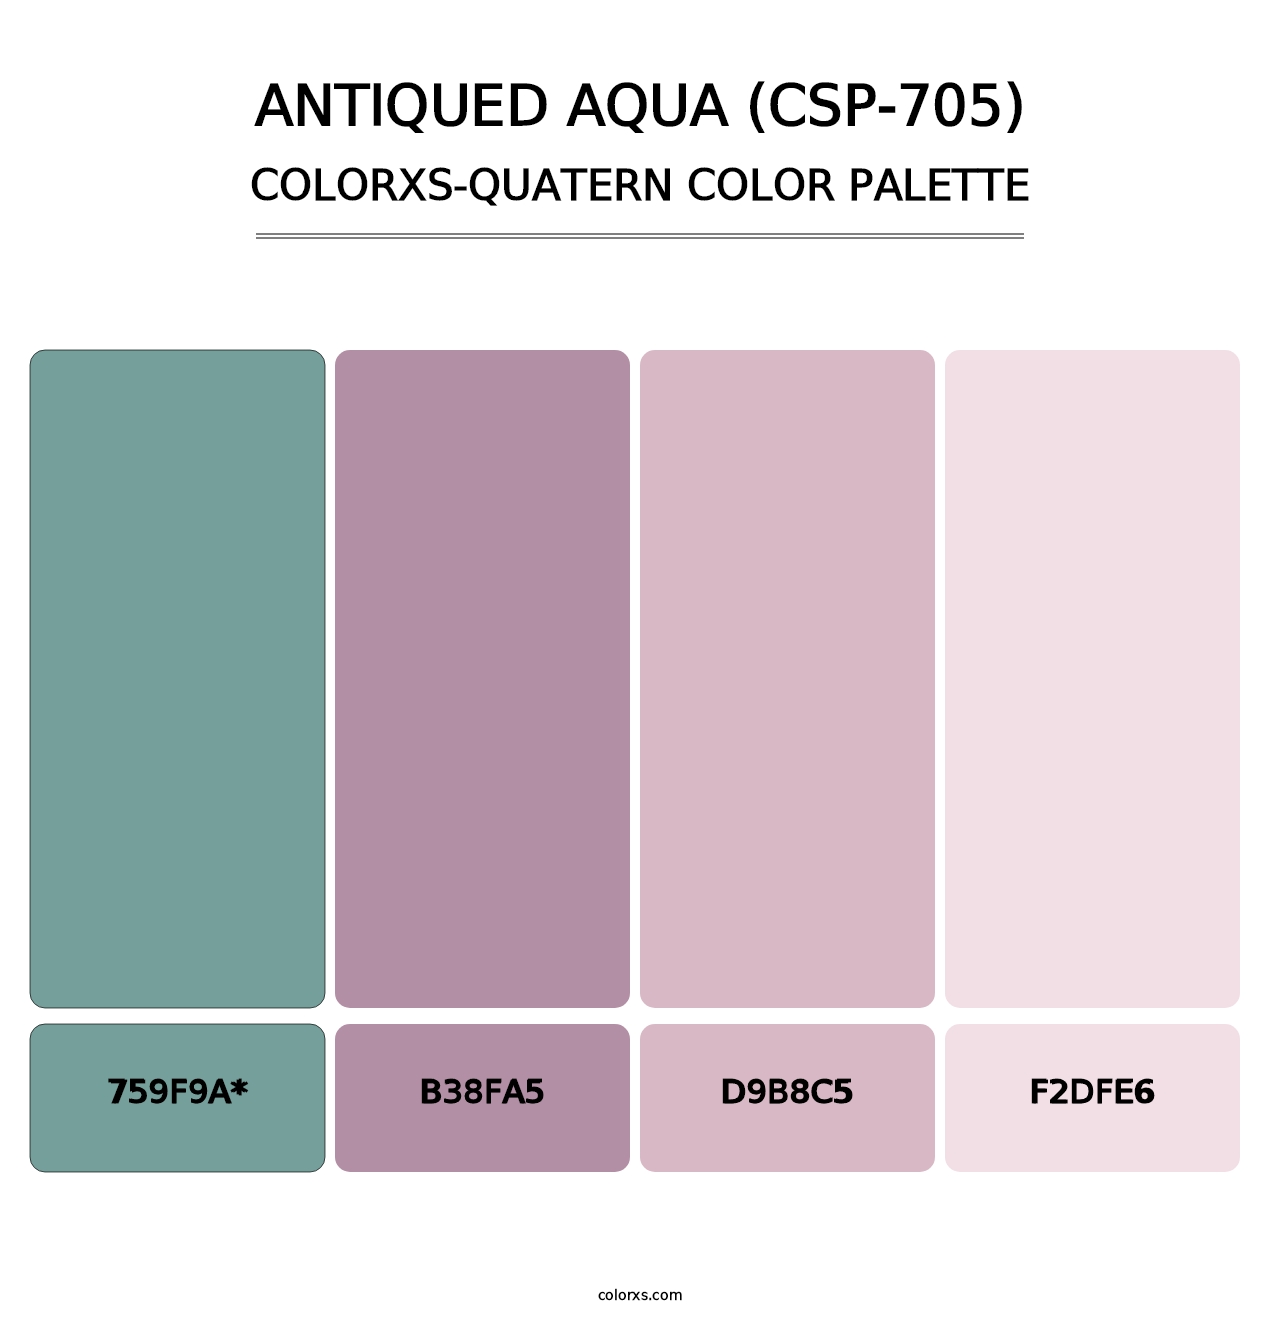 Antiqued Aqua (CSP-705) - Colorxs Quatern Palette